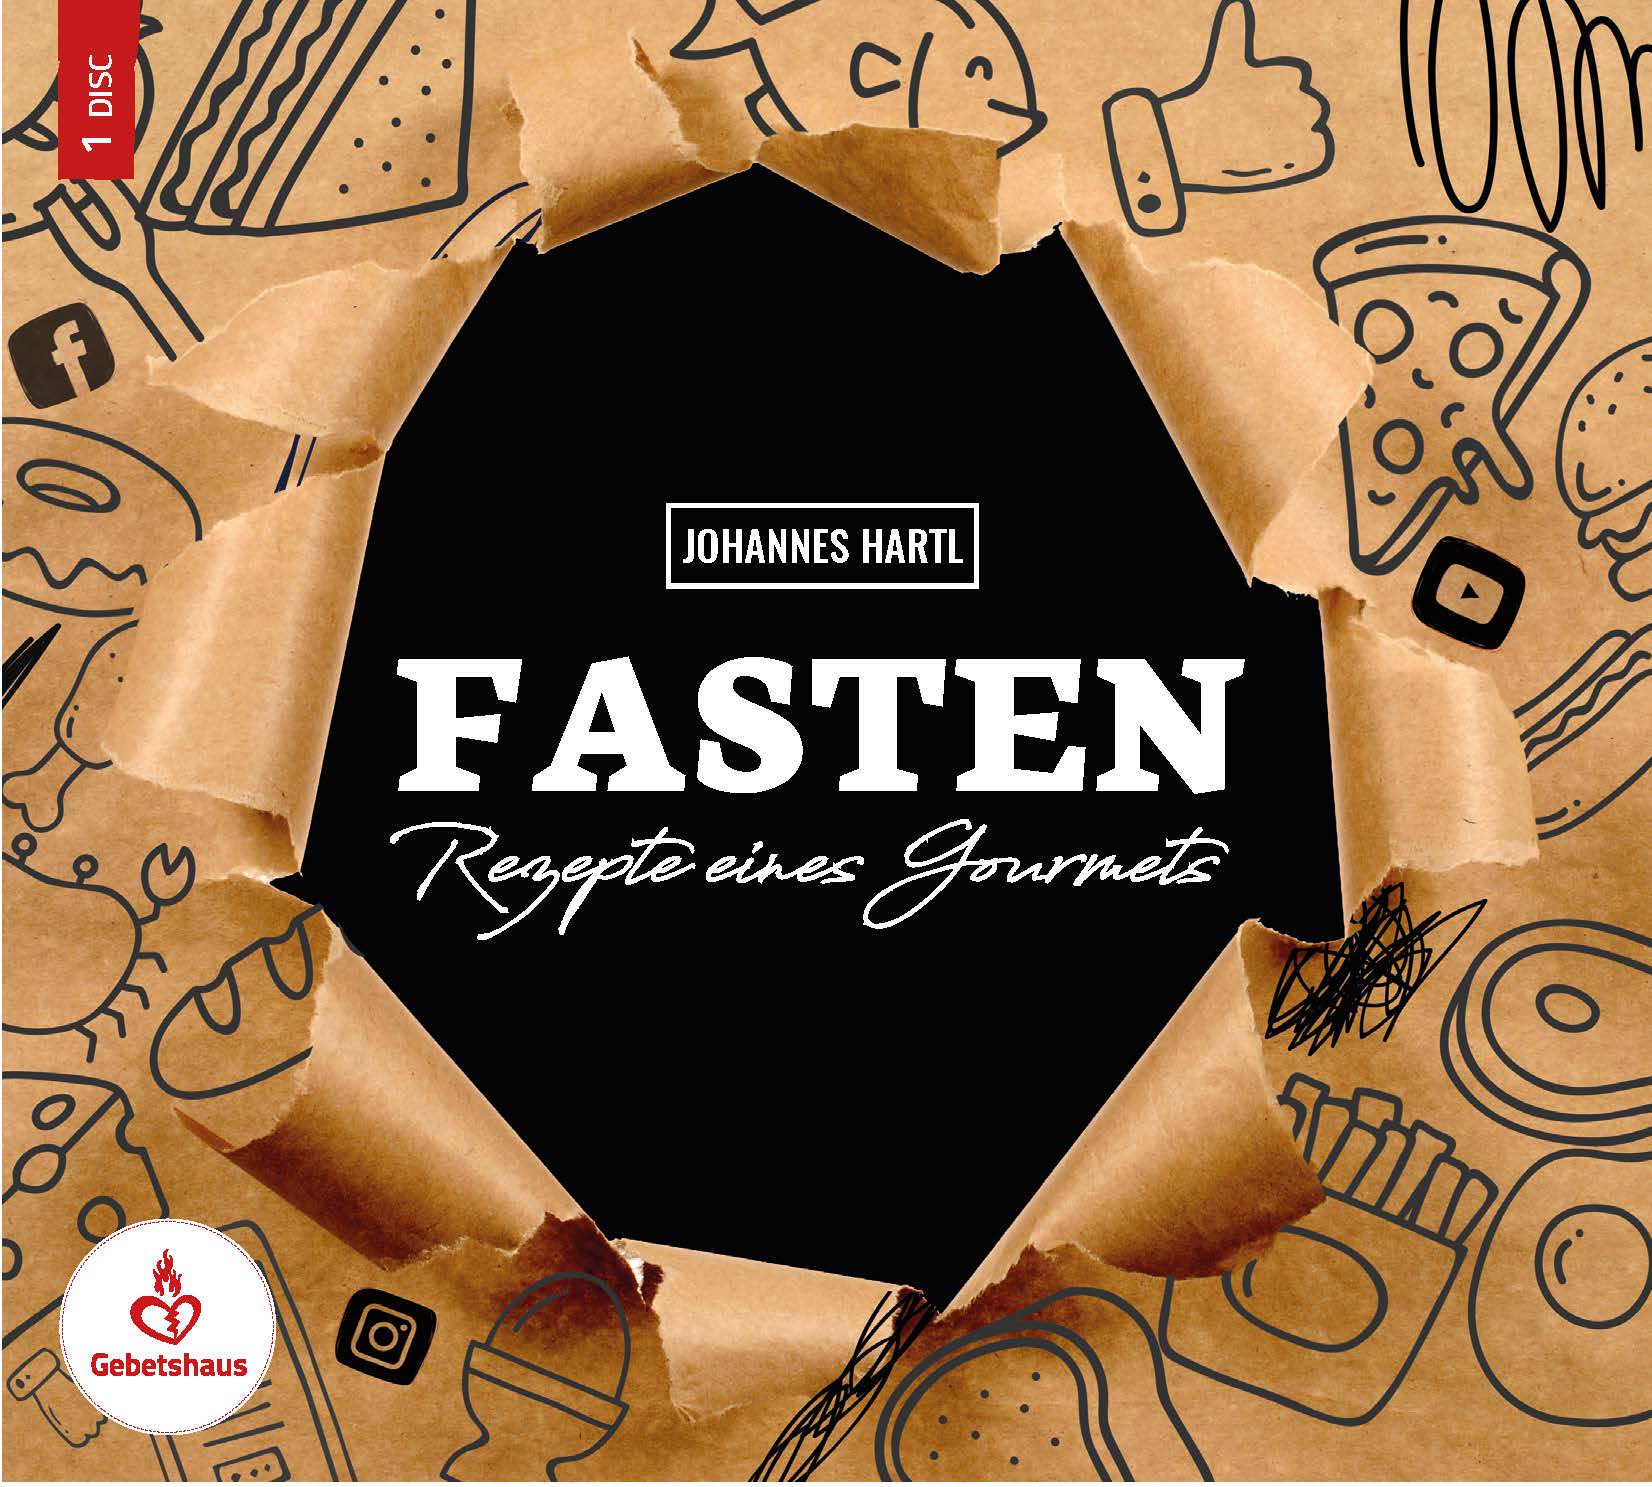 Fasten - Rezepte eines Gourmets | CD - Gebetshaus Augsburg | Shop